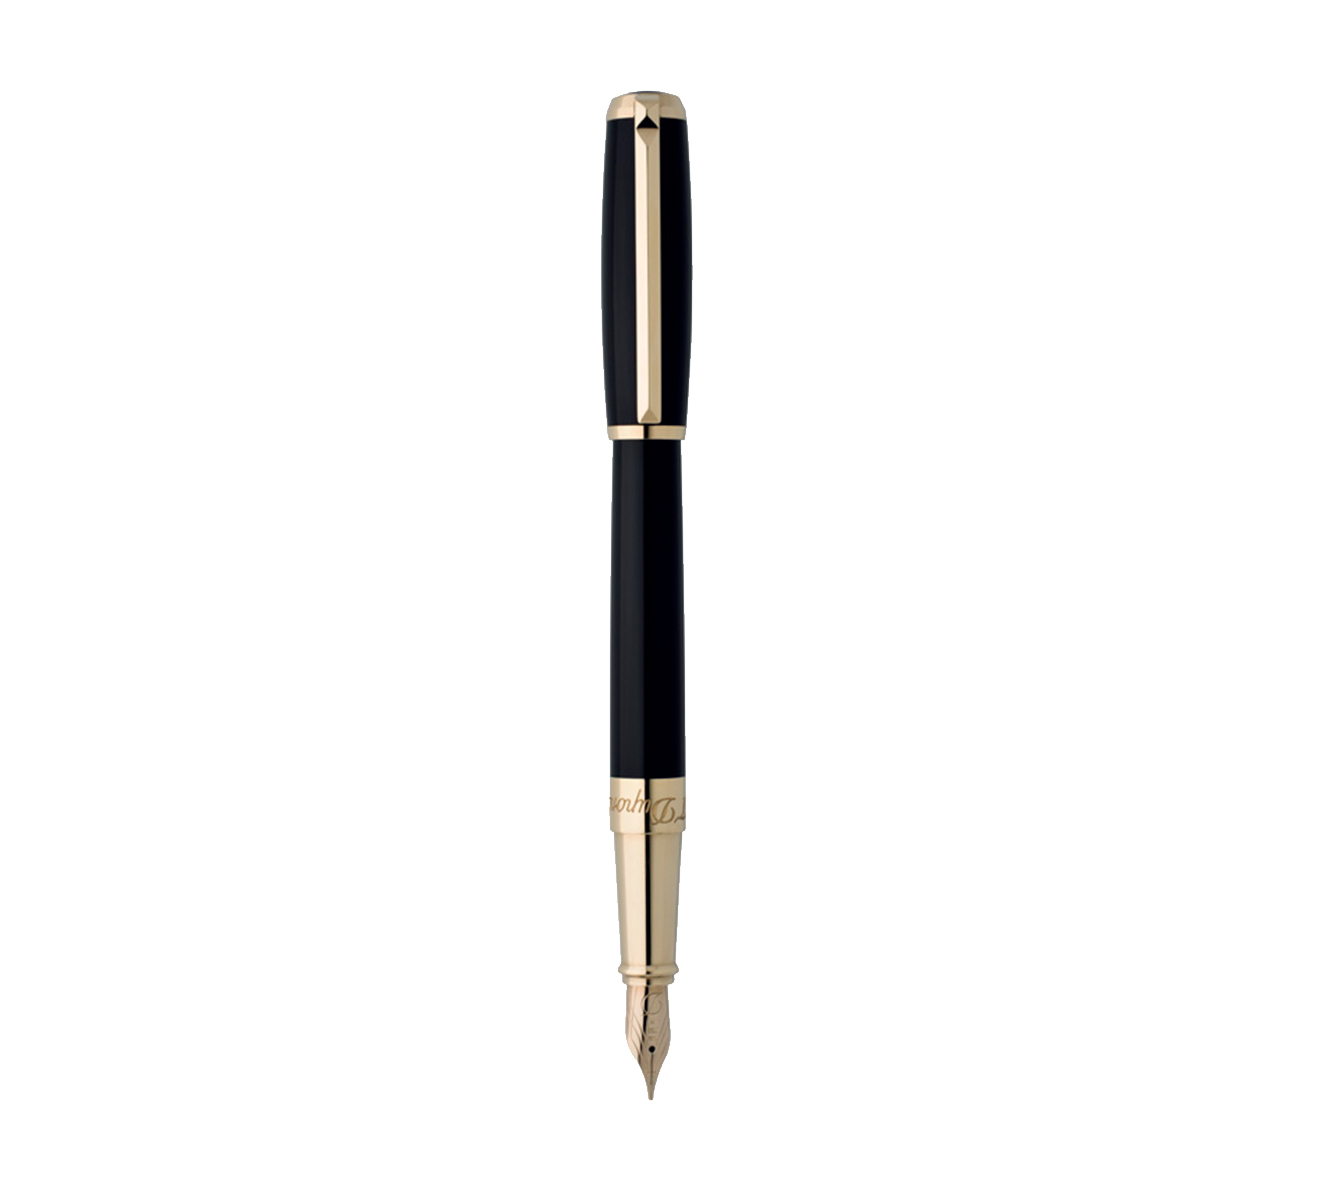 Перьевая ручка S.T. Dupont Line D 410574 - фото 1 – Mercury